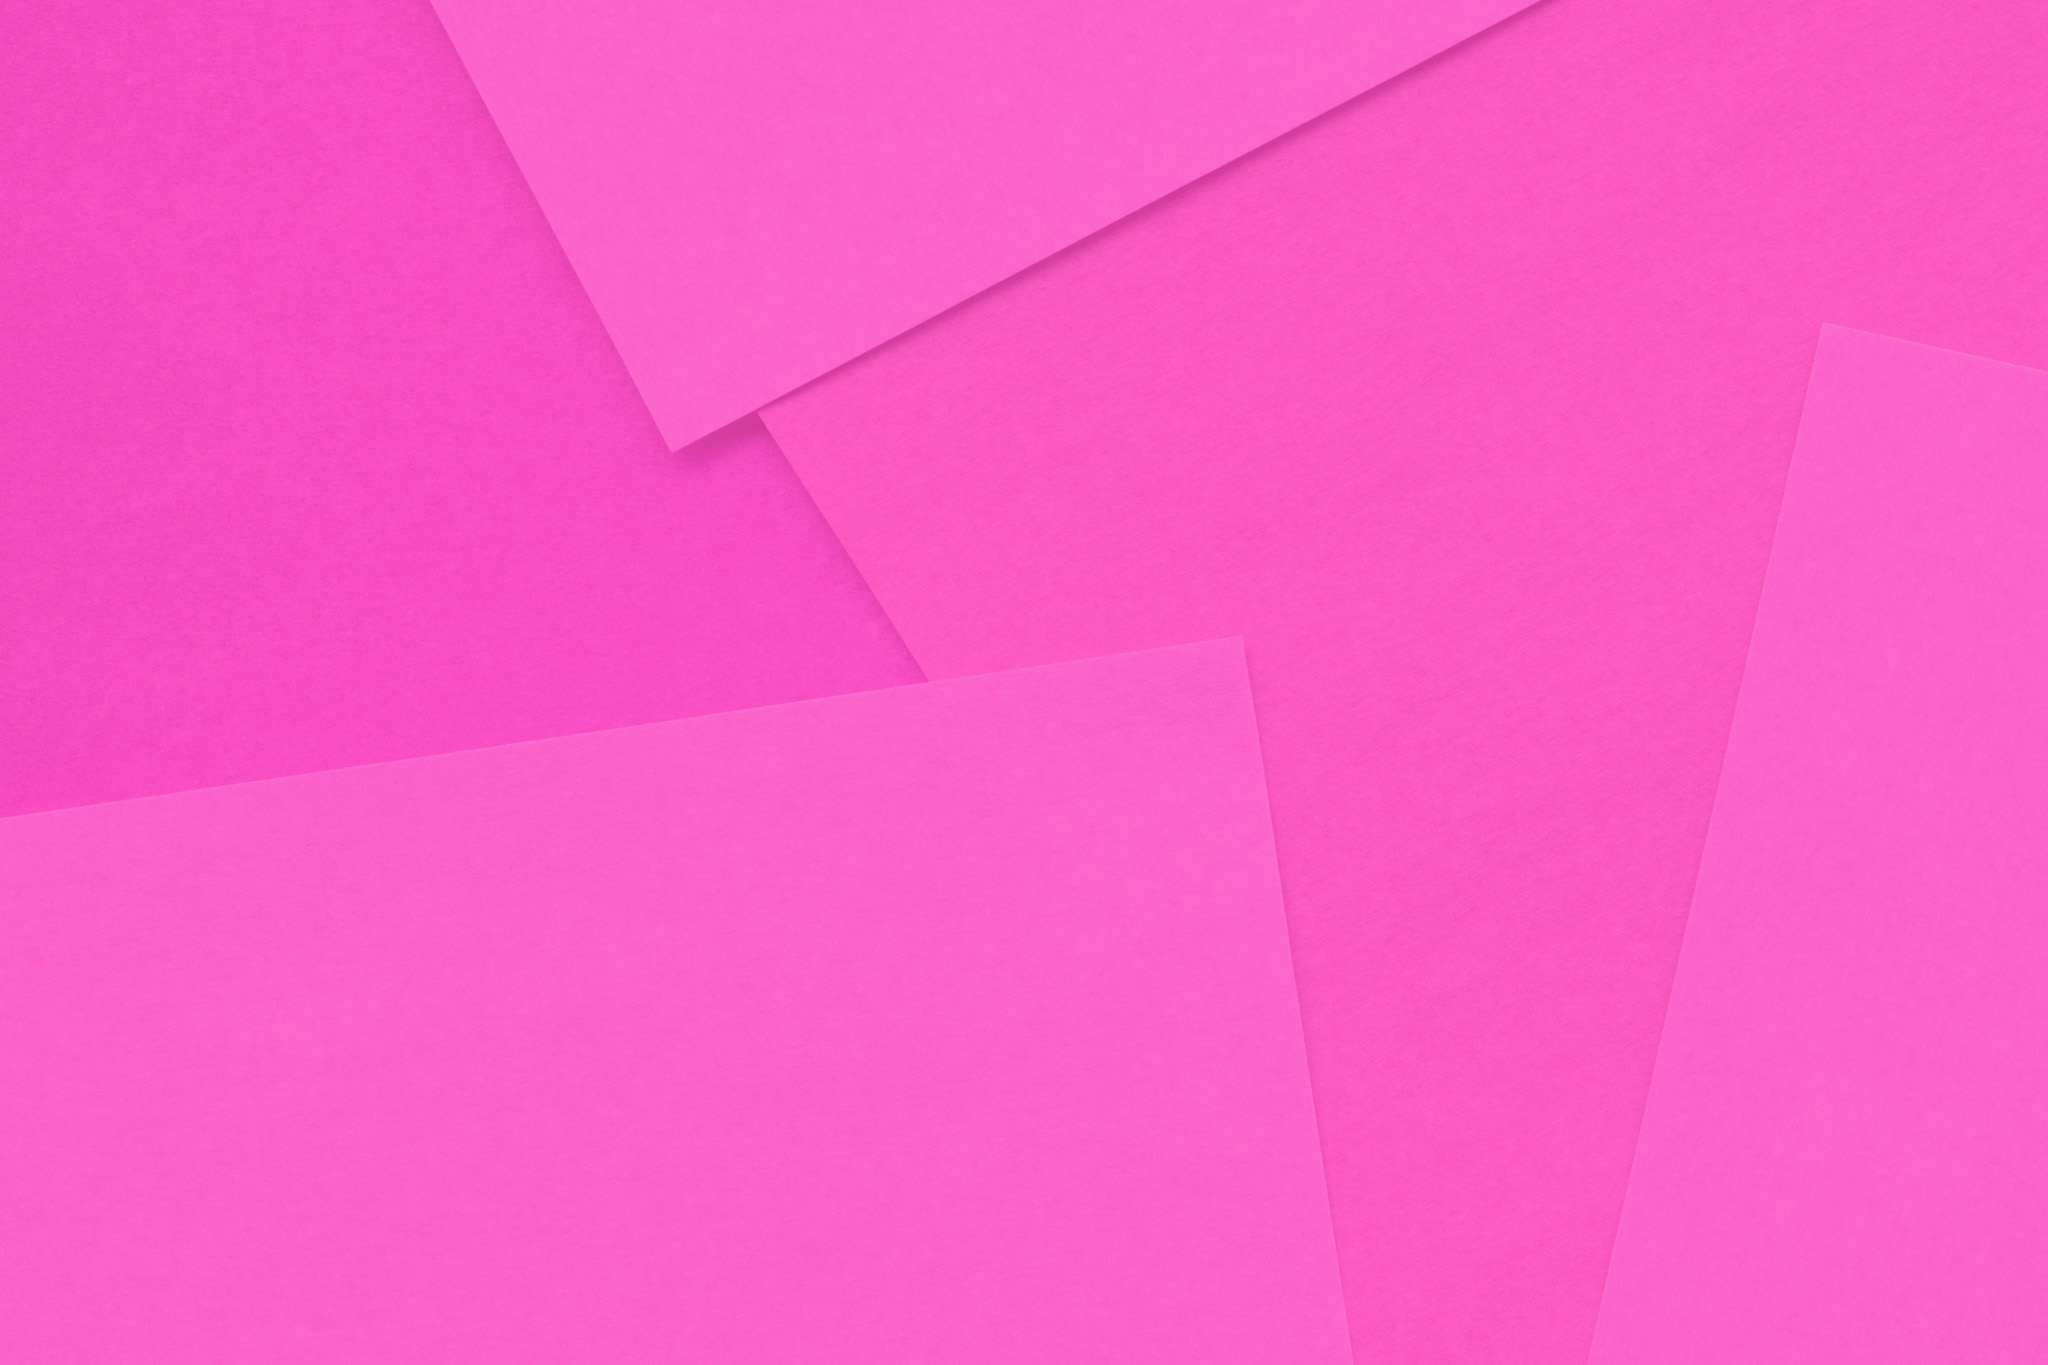 シンプルなピンクのフリー素材 の画像素材を無料ダウンロード 1 背景フリー素材 Beiz Images